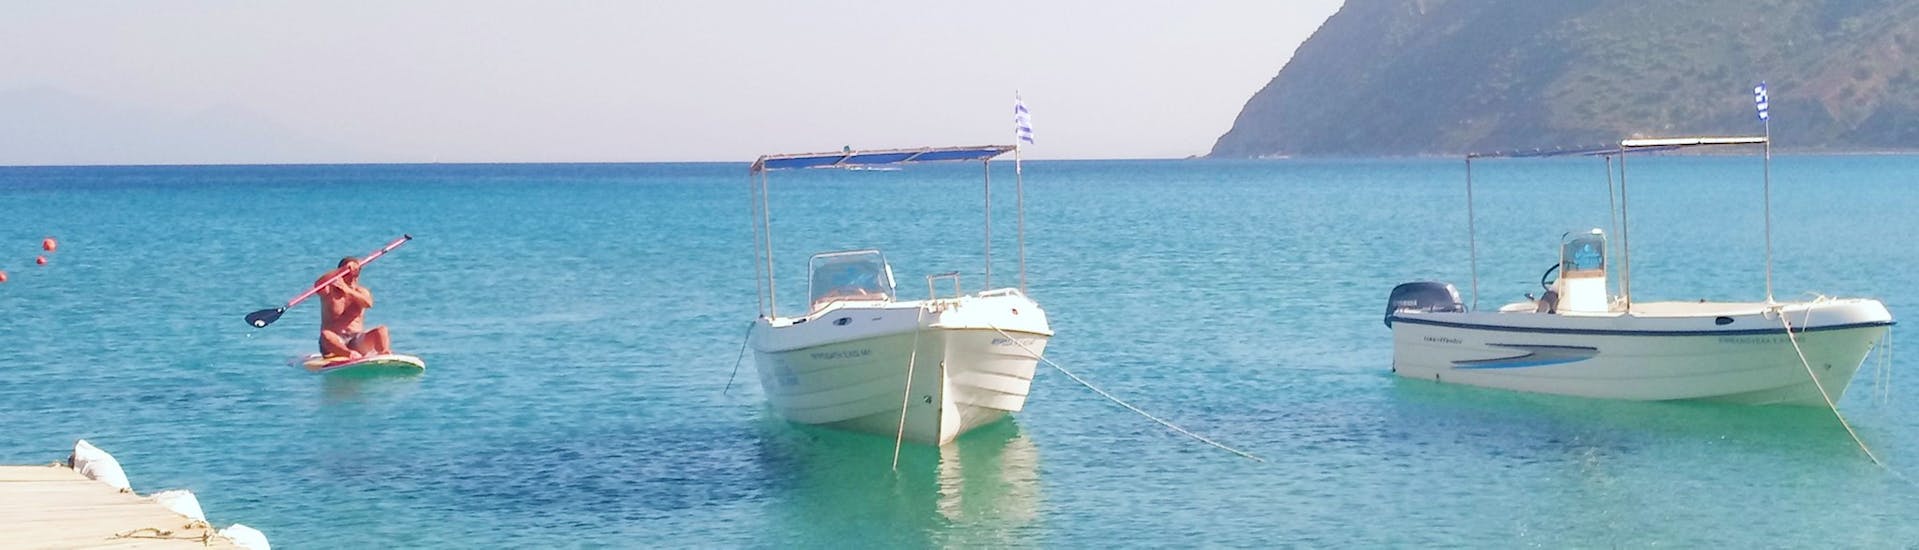 Blick während des SUP-Verleihs am Strand von Kefalos mit dem Water Club Poseidon Kos.